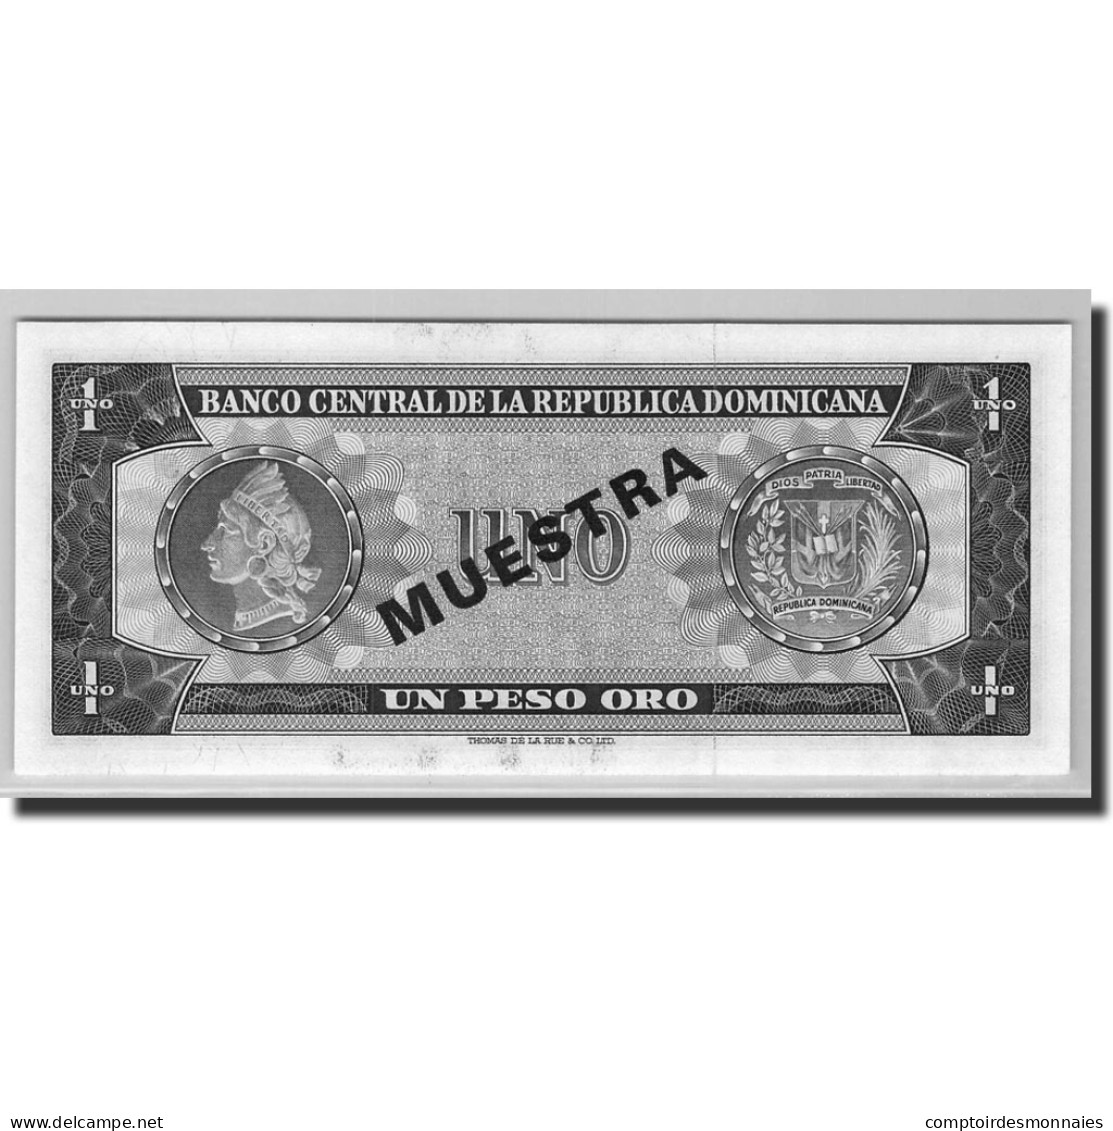 Billet, Dominican Republic, 1 Peso Oro, 1964-73, 1964, KM:99s3, NEUF - Dominicaine